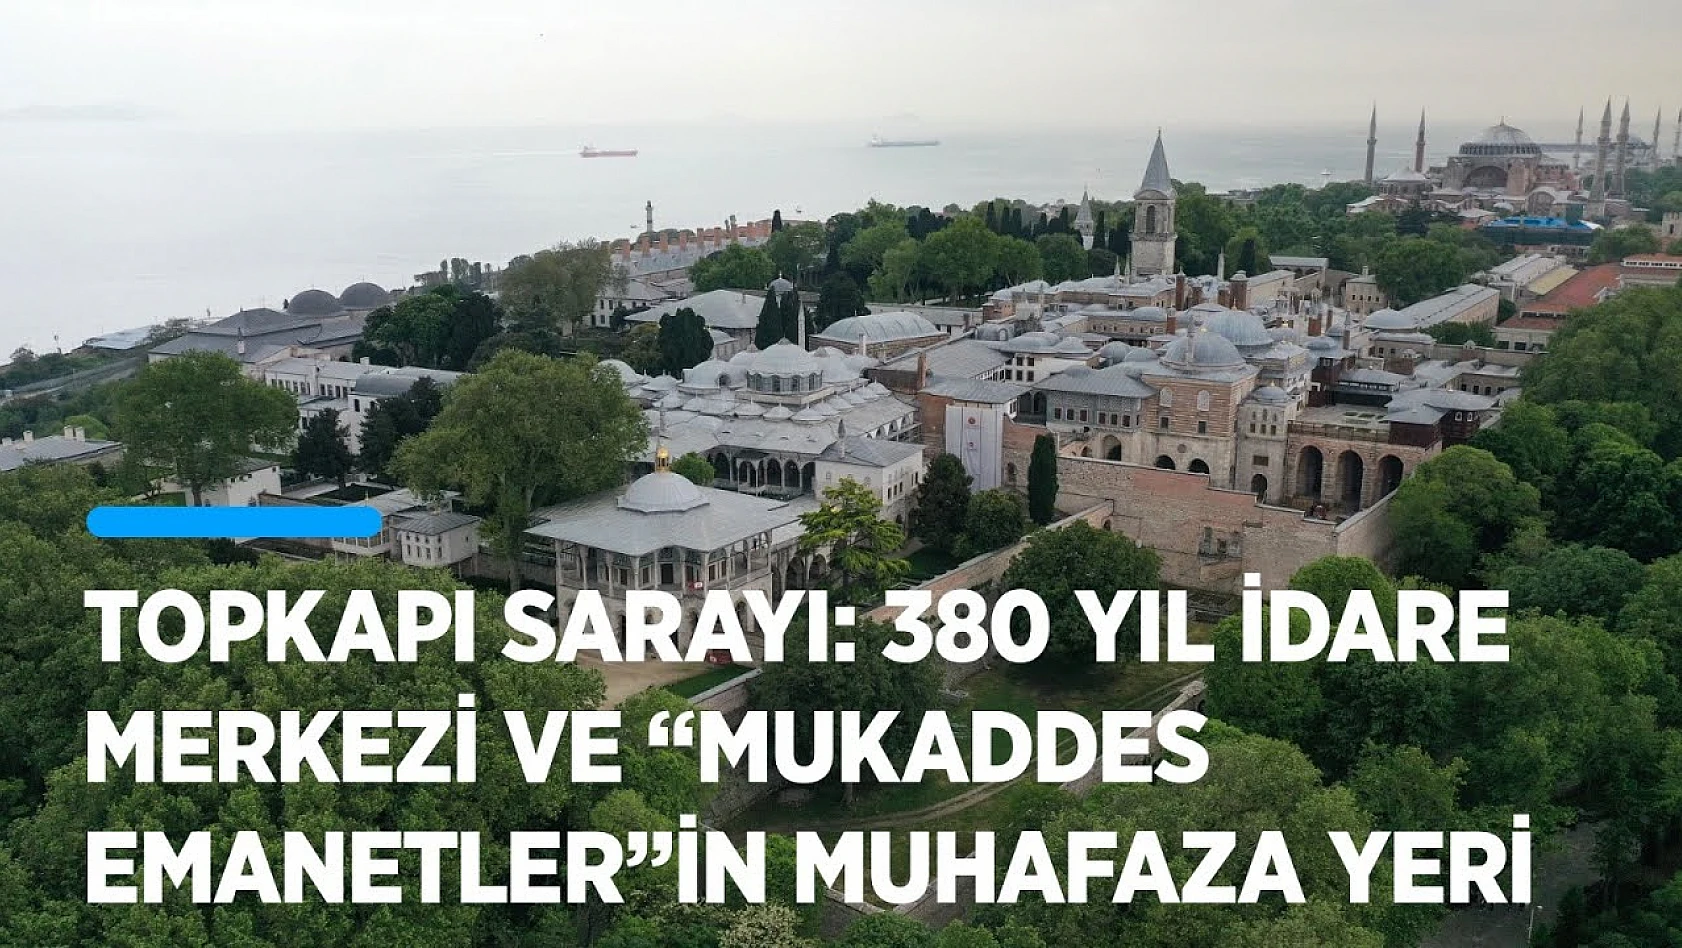 Topkapı Sarayı: Osmanlı'nın 380 yıl idare merkezi ve 'Mukaddes Emanetler'in muhafaza yeri